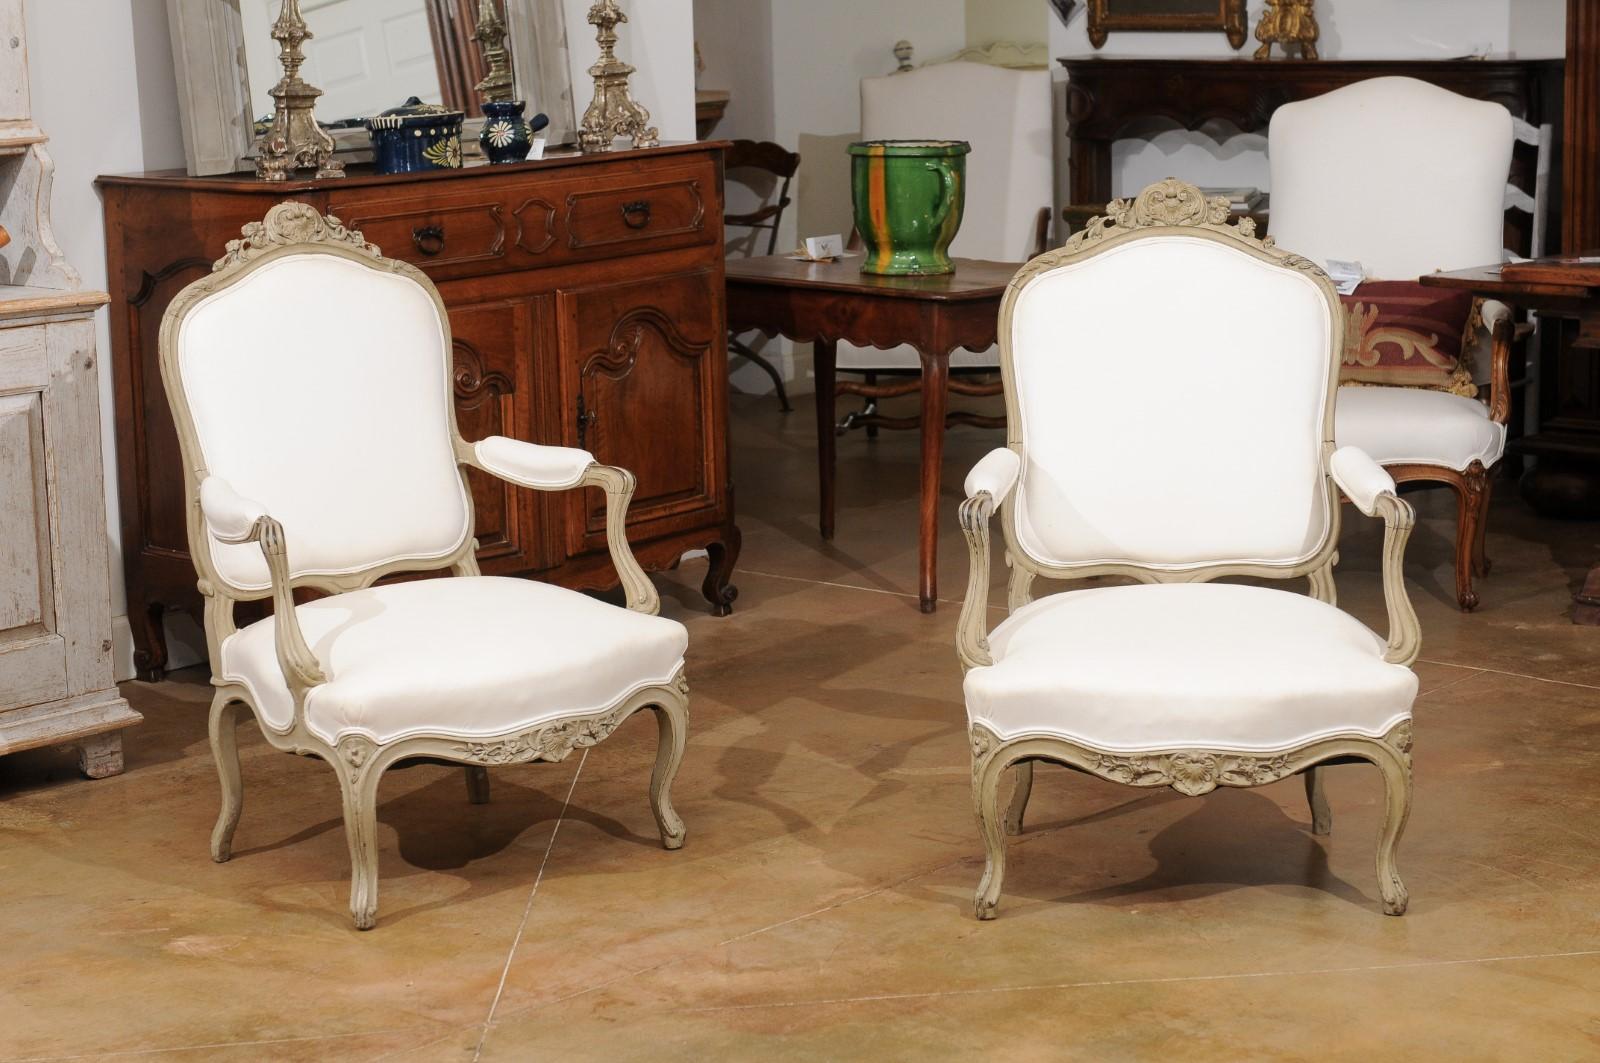 Paire de fauteuils en bois peint d'époque Napoléon III, datant du milieu du 19e siècle, à décor sculpté de fleurs et de feuillages. Créée en France au début du règne de l'empereur Napoléon III, cette paire de fauteuils présente un dos légèrement